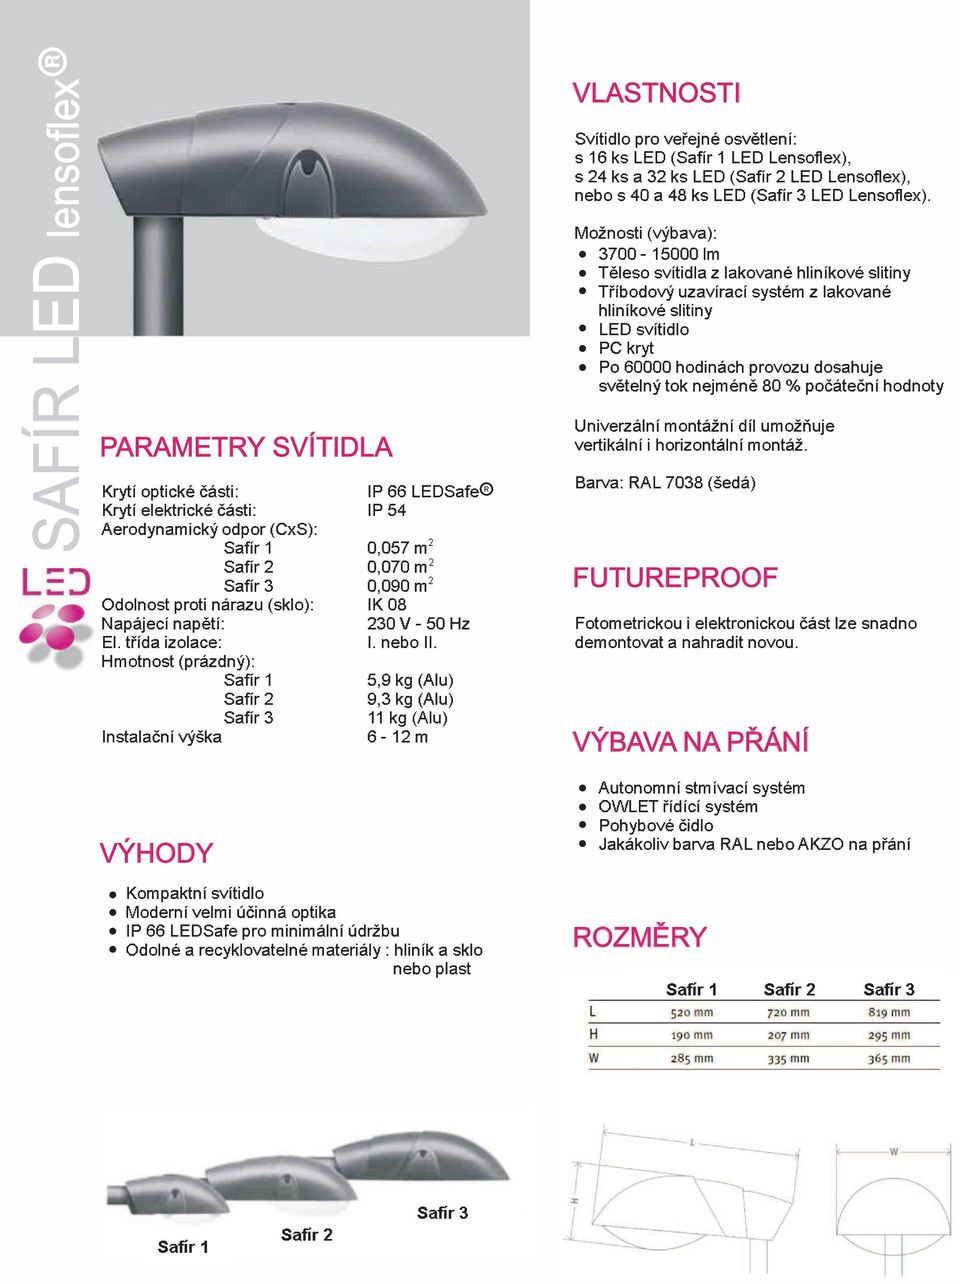 5,9 kg (Alu) 9,3 kg (Alu) 11 kg (Alu) 6-12 m Kompaktní svítidlo Moderní velmi úèinná optika IP 66 LEDSafe pro minimální údržbu Odolné a recyklovatelné materiály: hliník a sklo nebo plast R VLASTNOSTI